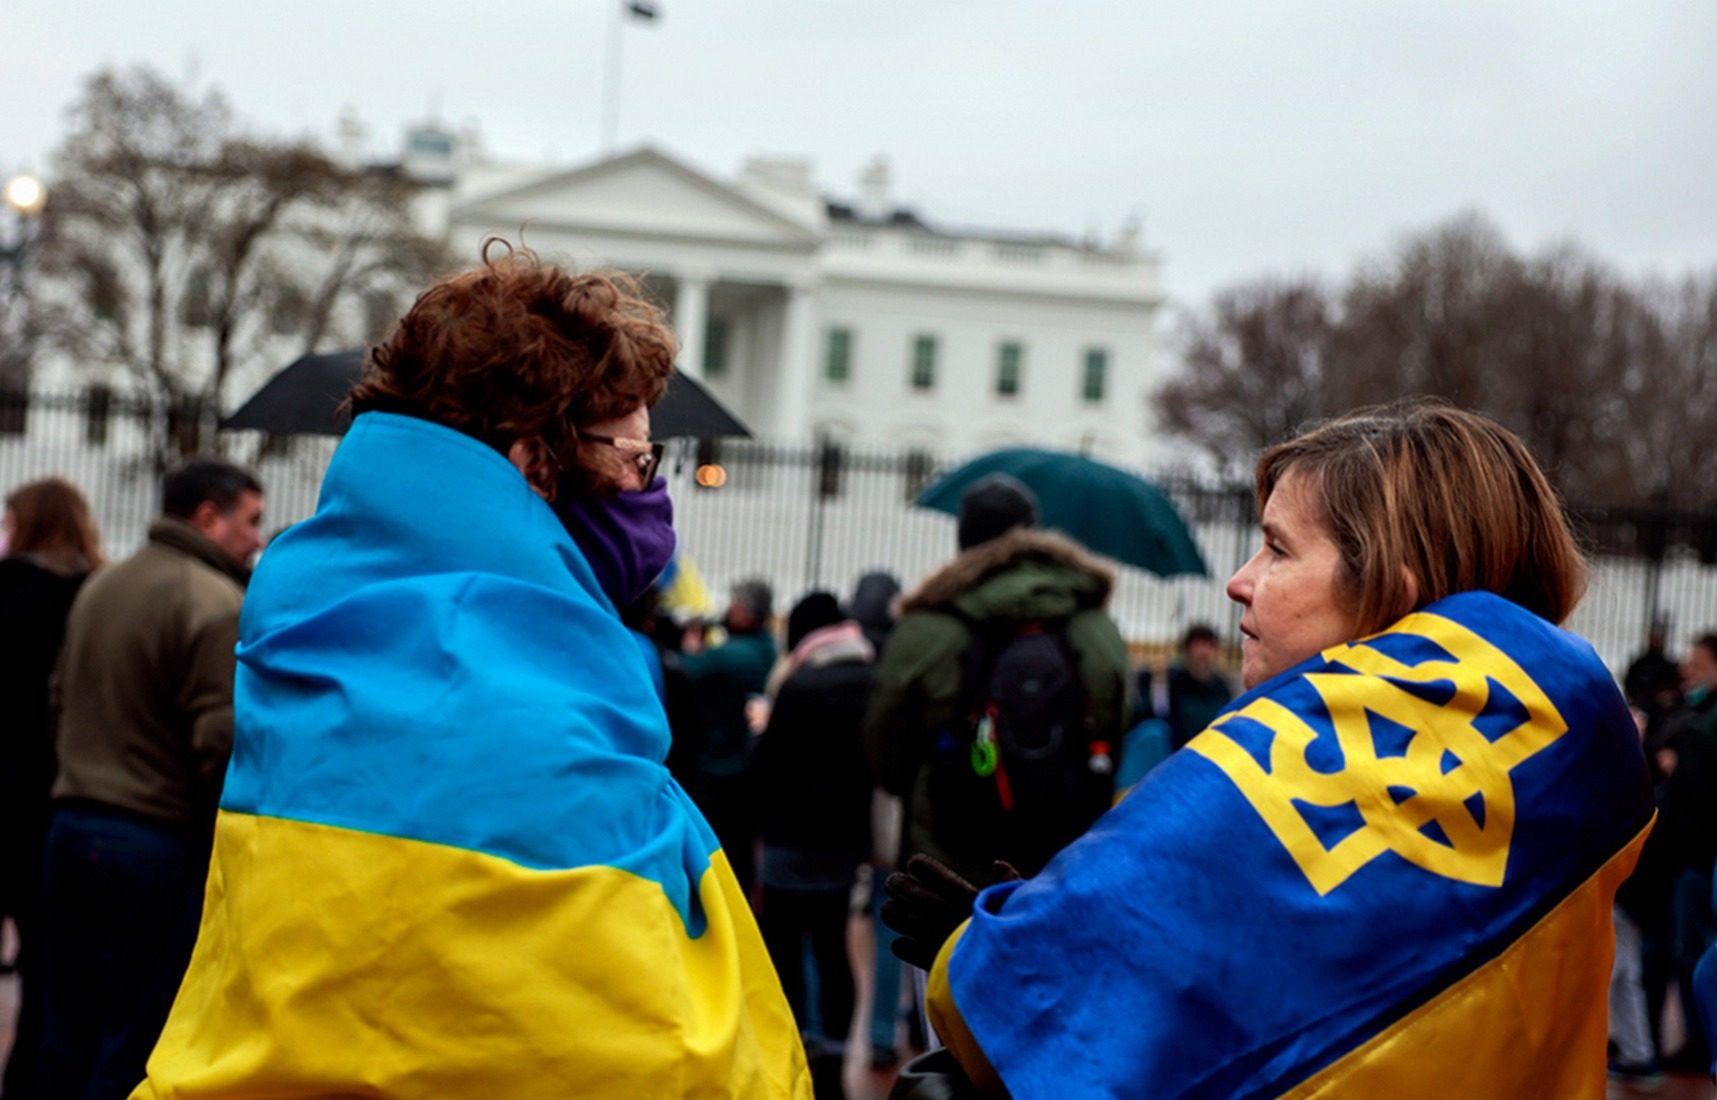 Социологи выяснили, почему украинские беженцы возвращаются домой